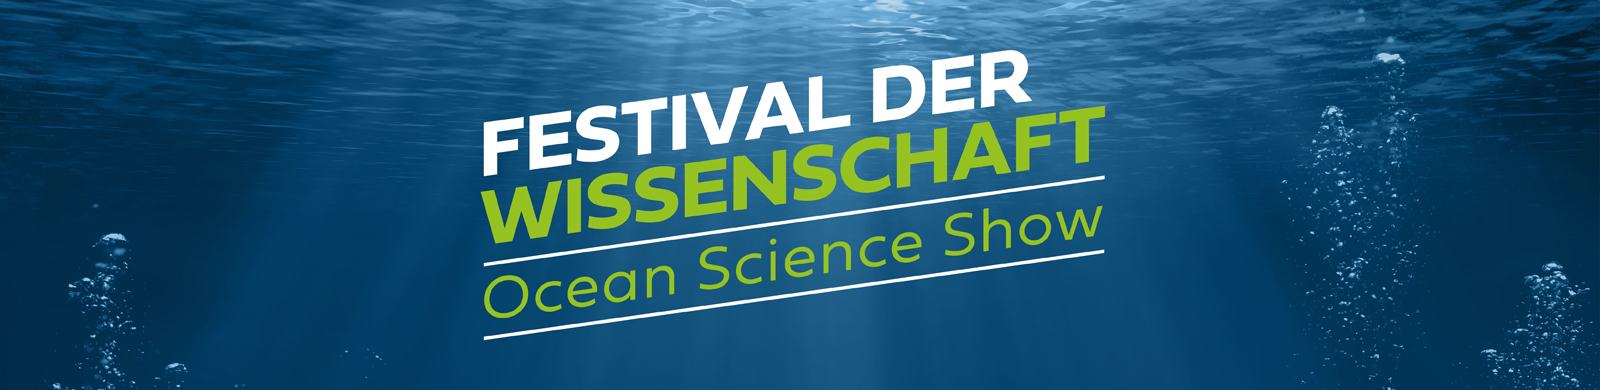 Schriftzug: Festival der Wissenschaft Ocean Science Show